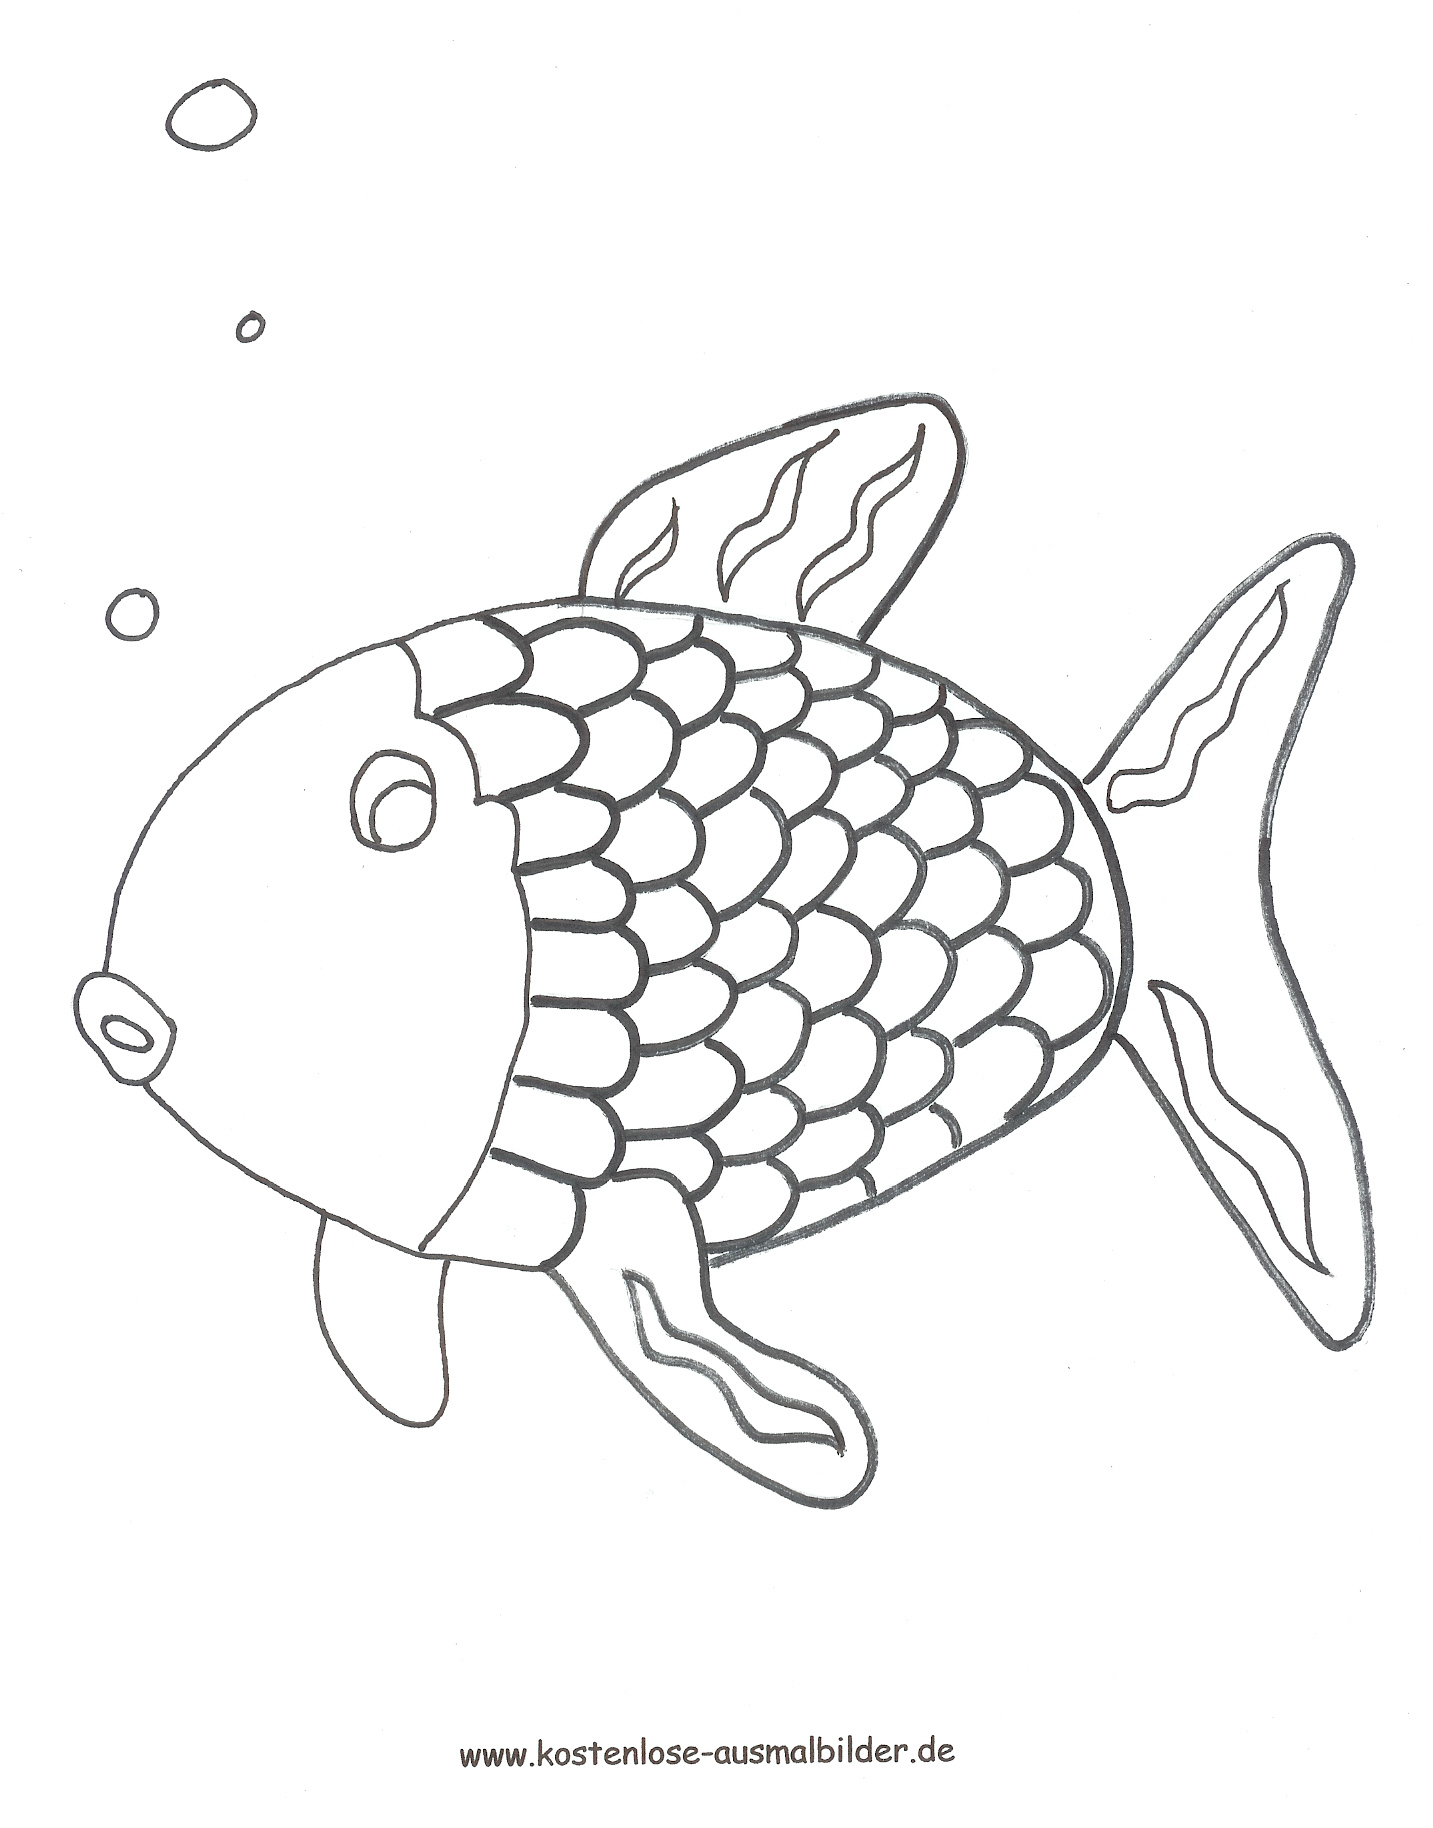 Schablone fisch zum ausdrucken kostenlos